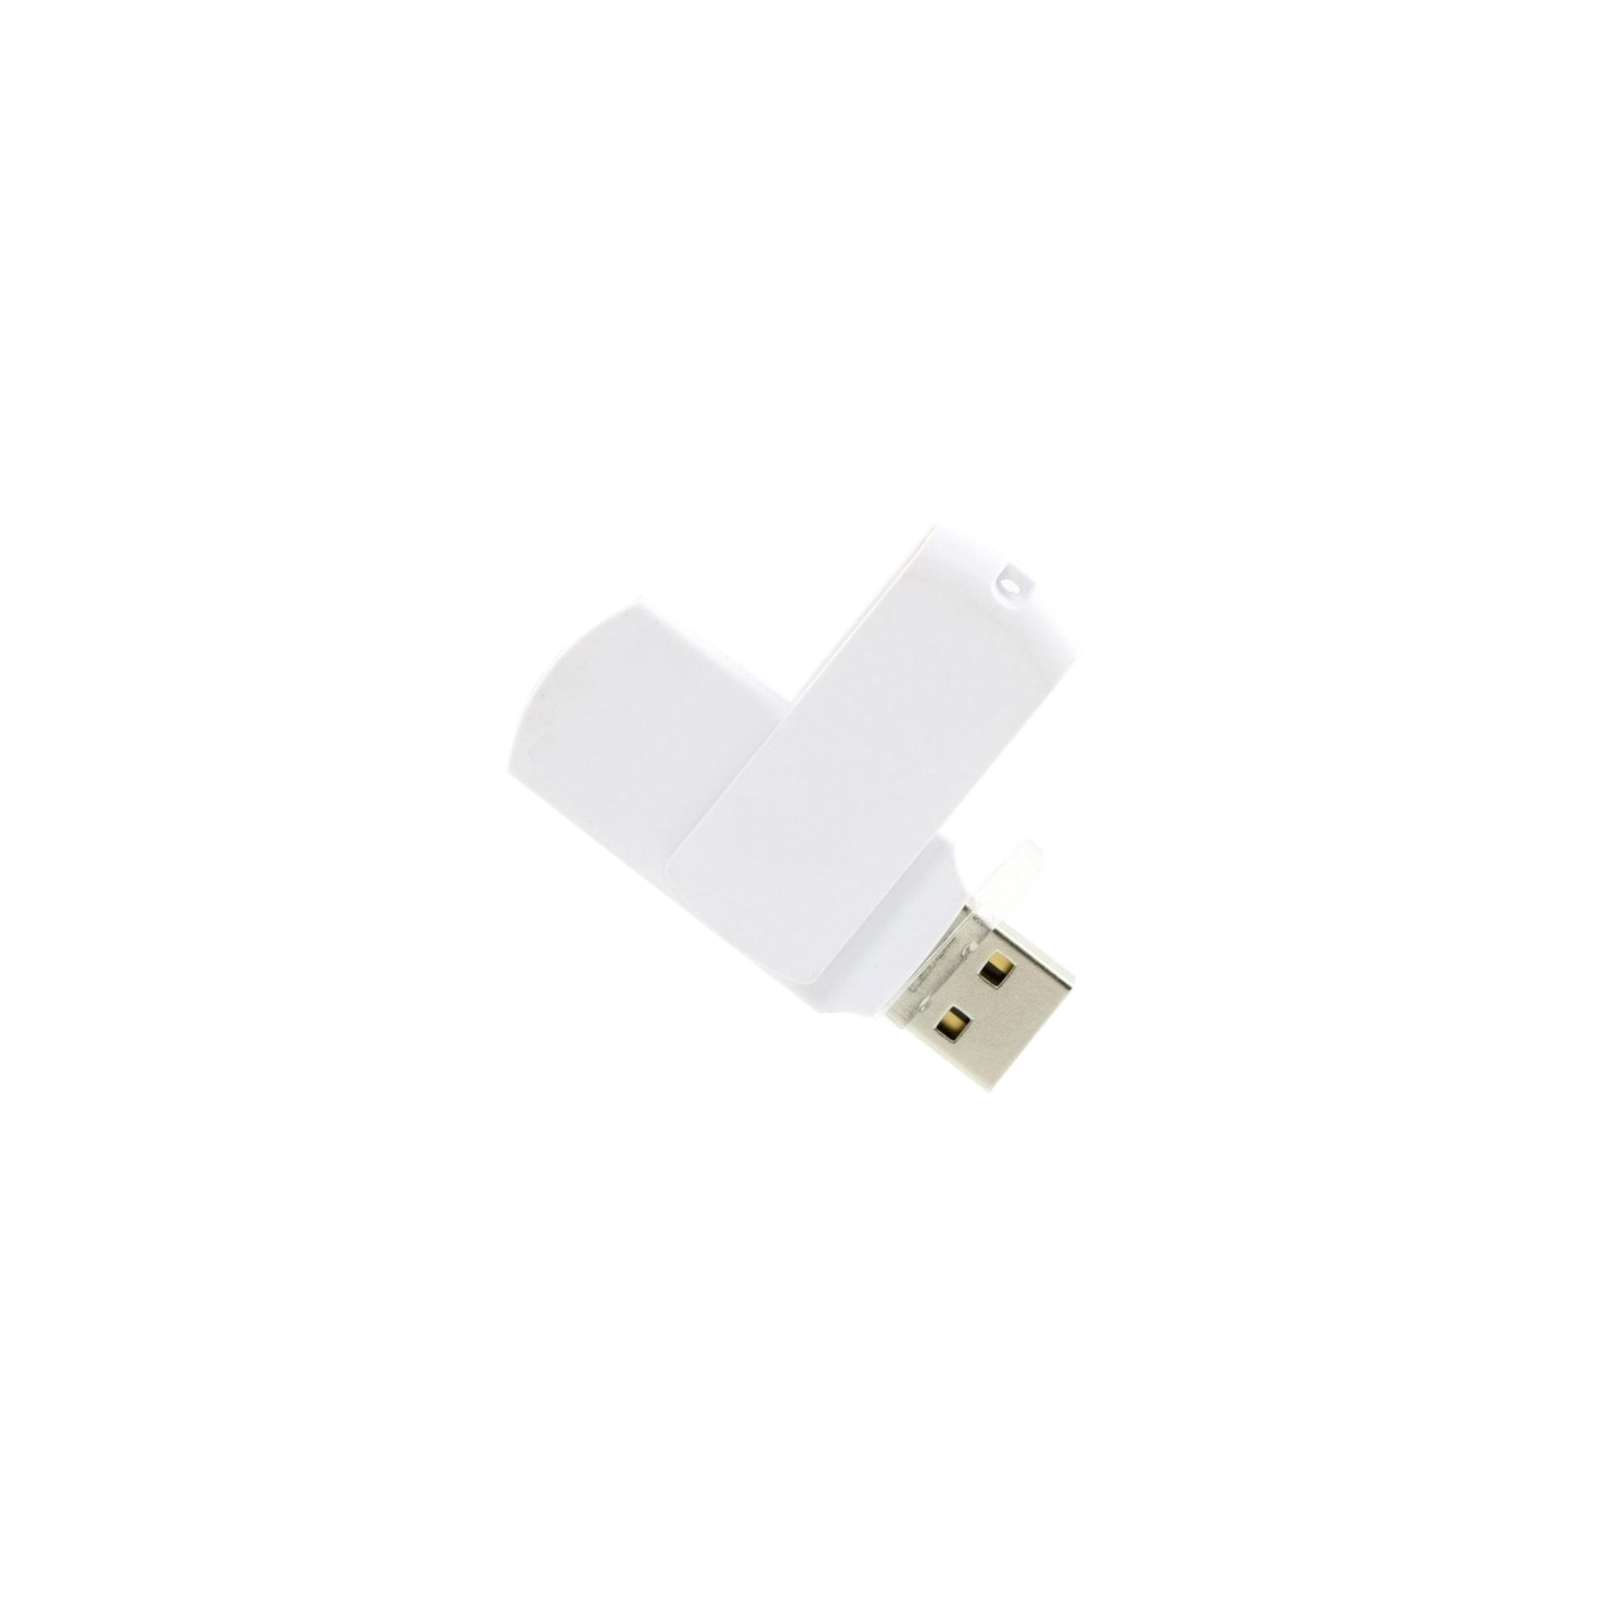 USB флеш накопитель Goodram 8GB UCO2 White USB 2.0 (UCO2-0080WWBBB)